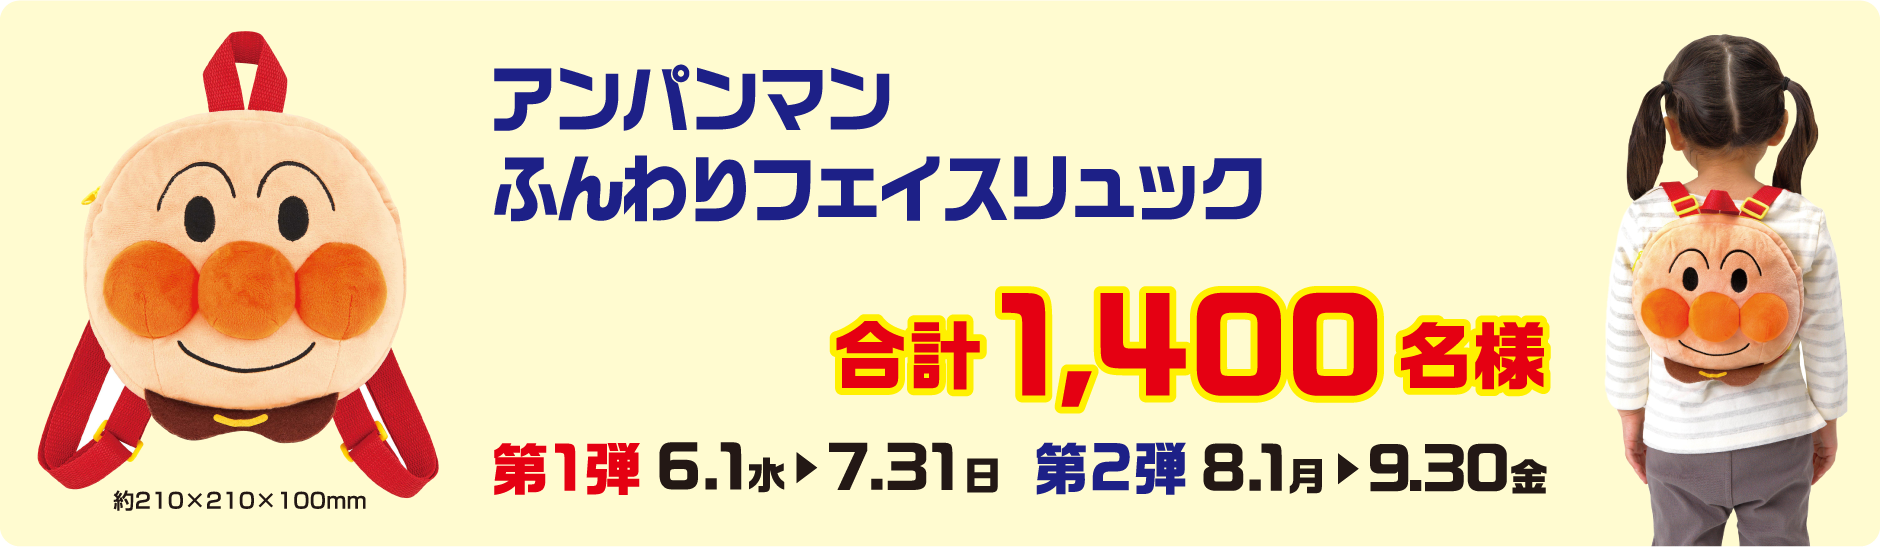 アンパンマン ふんわりフェイスリュック 合計1,400名様〈第1弾 6.1(水)→7.31(日)／第2弾 8.1(月)→9.30(金)〉